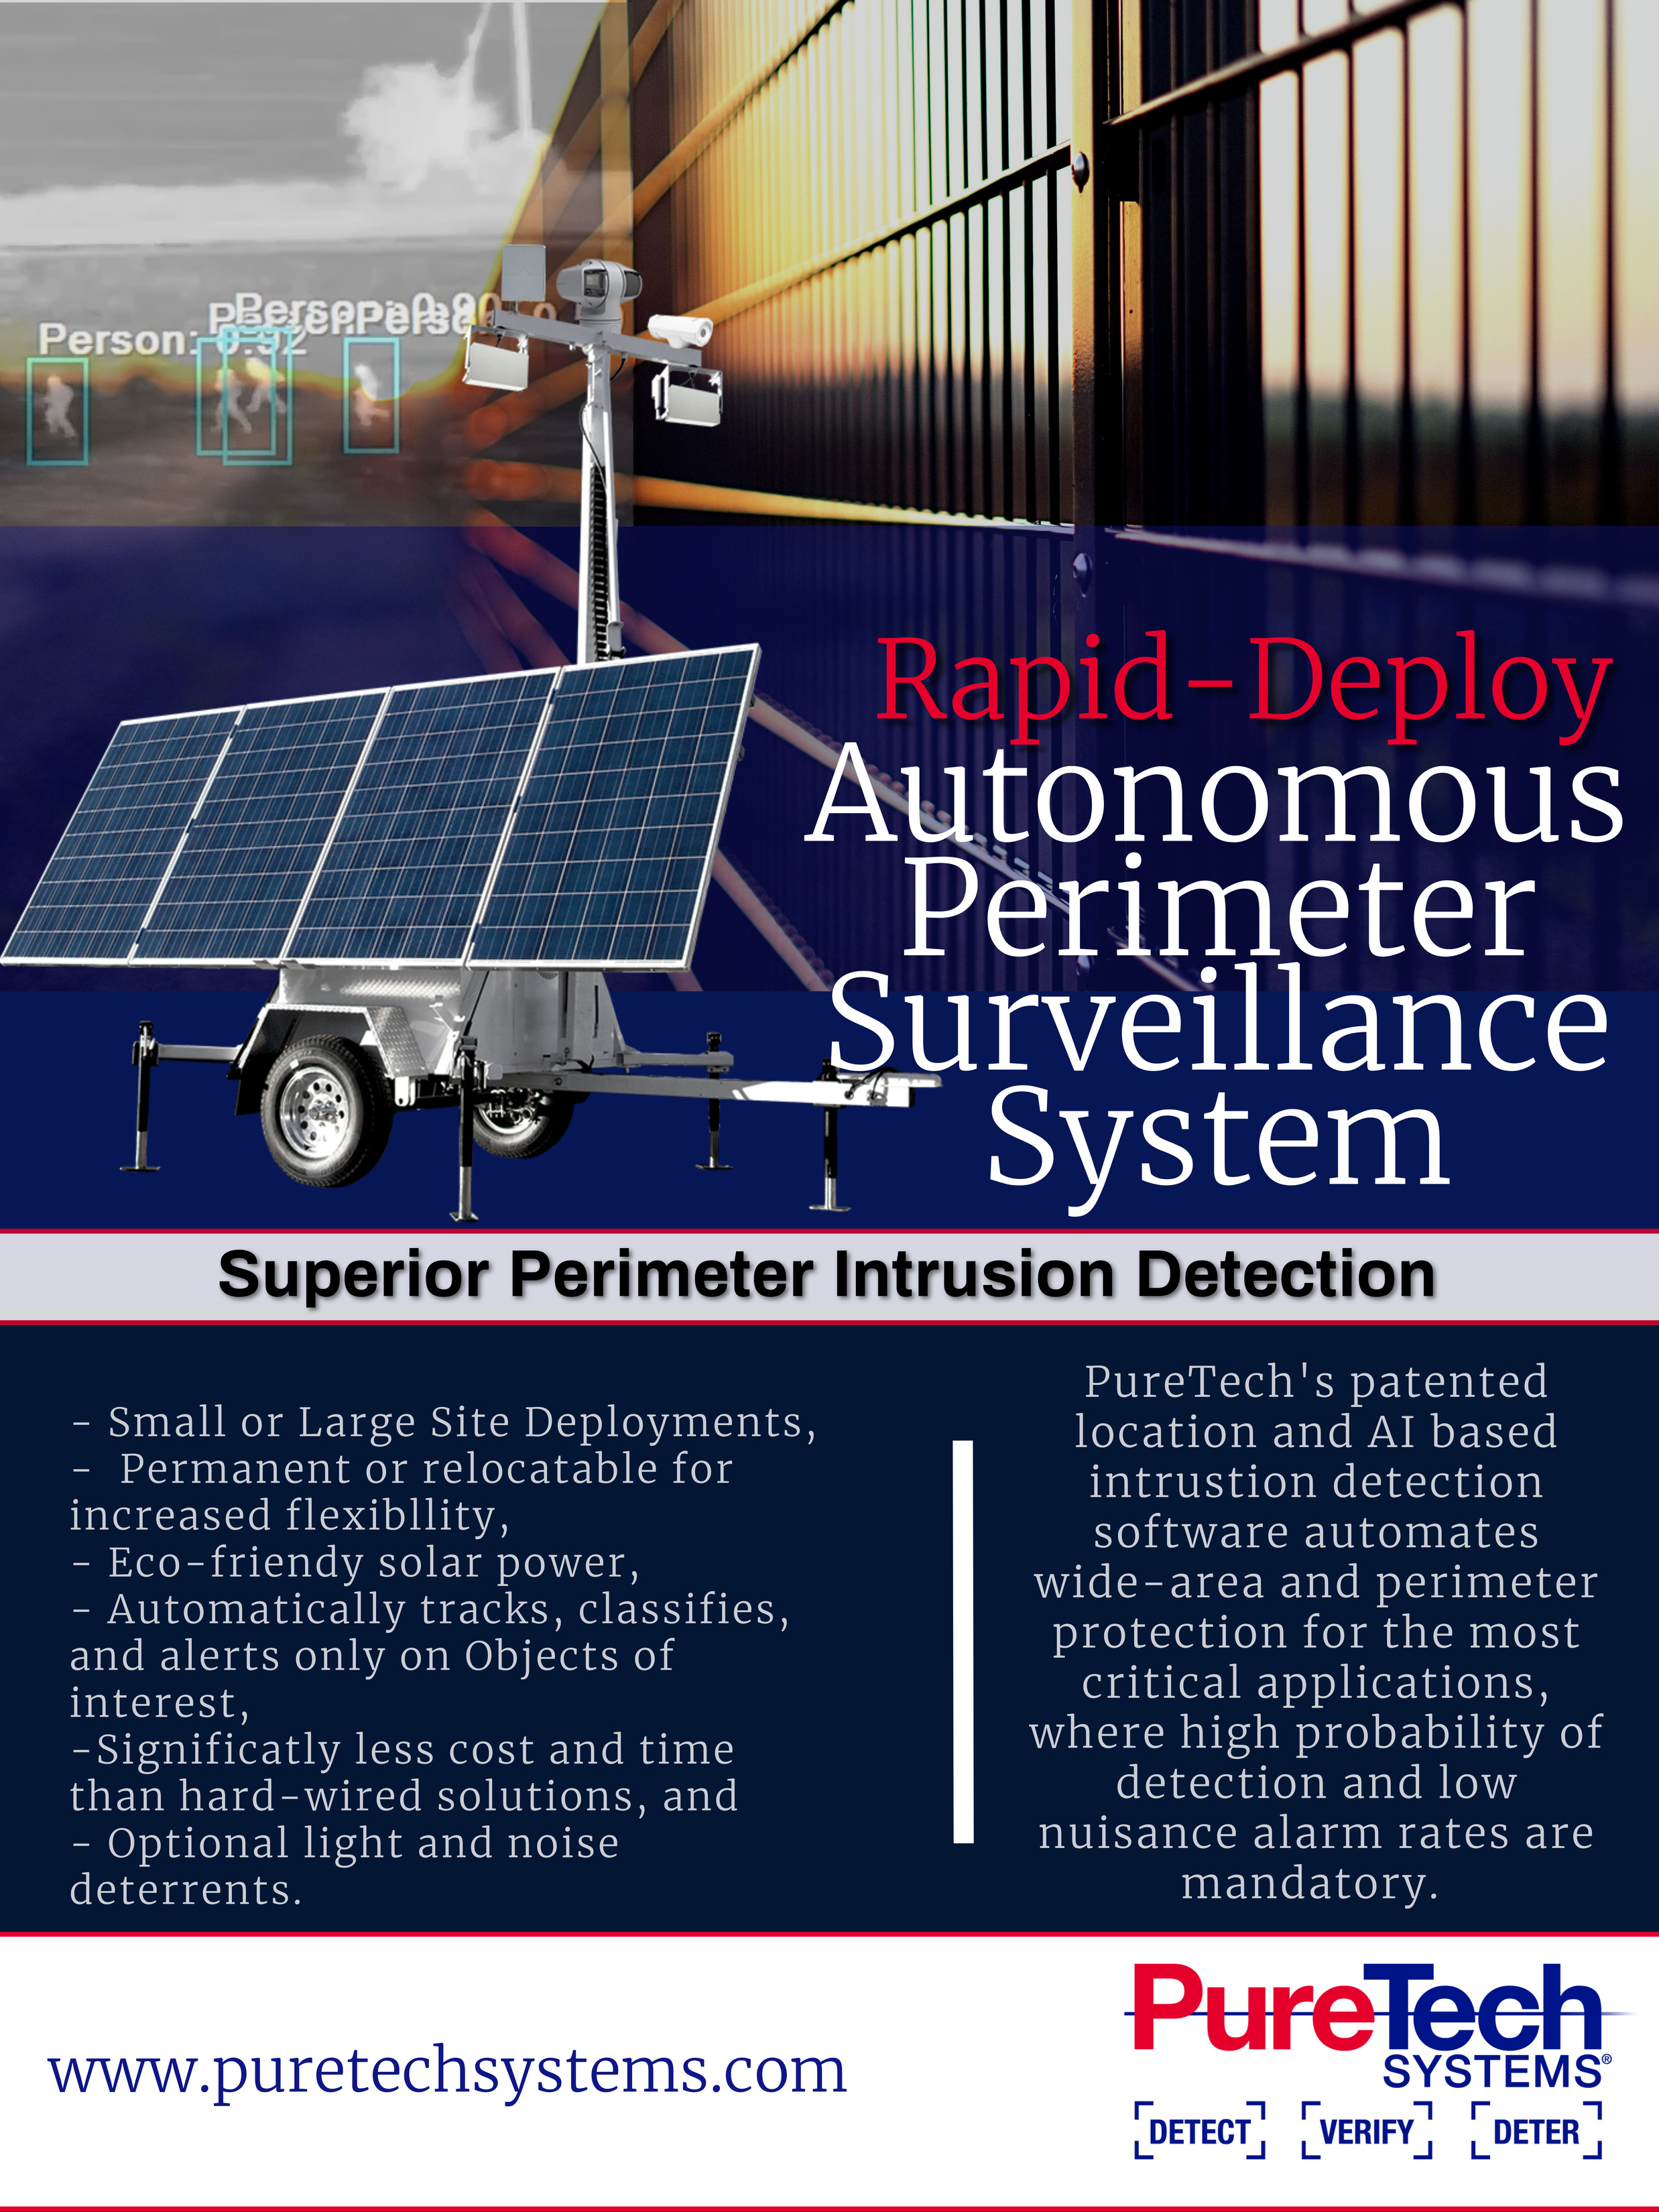 Rapid-Deploy Autonomous Perimeter Surveillance System (R-DAPSS)